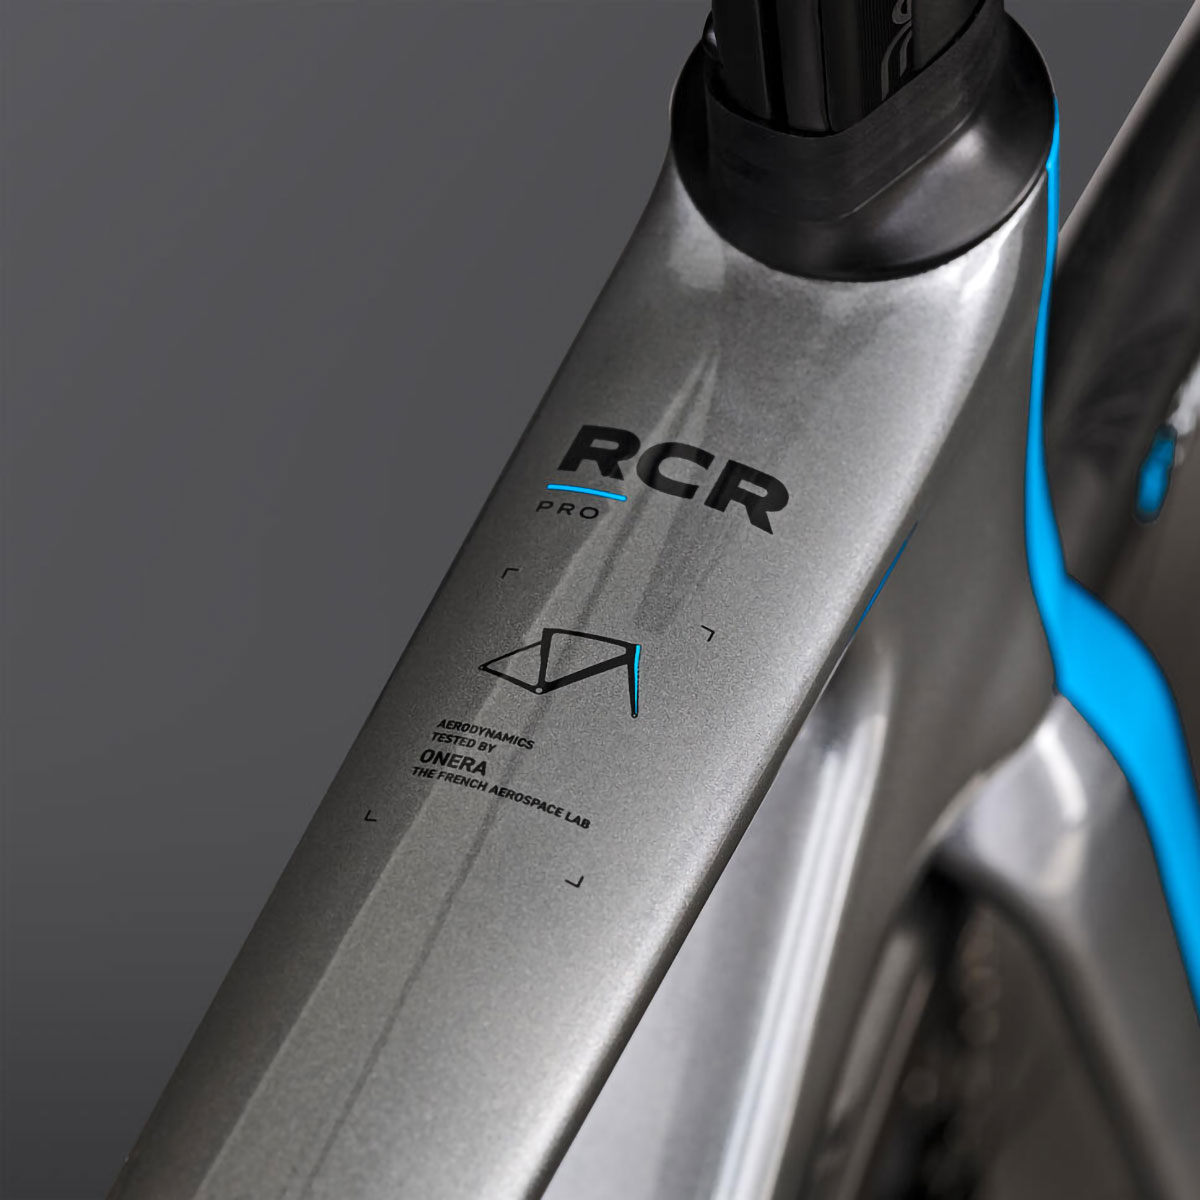 La Van Rysel RCR Pro en versión réplica del Decathlon AG2R La Mondiale, disponible en preventa con unidades limitadas